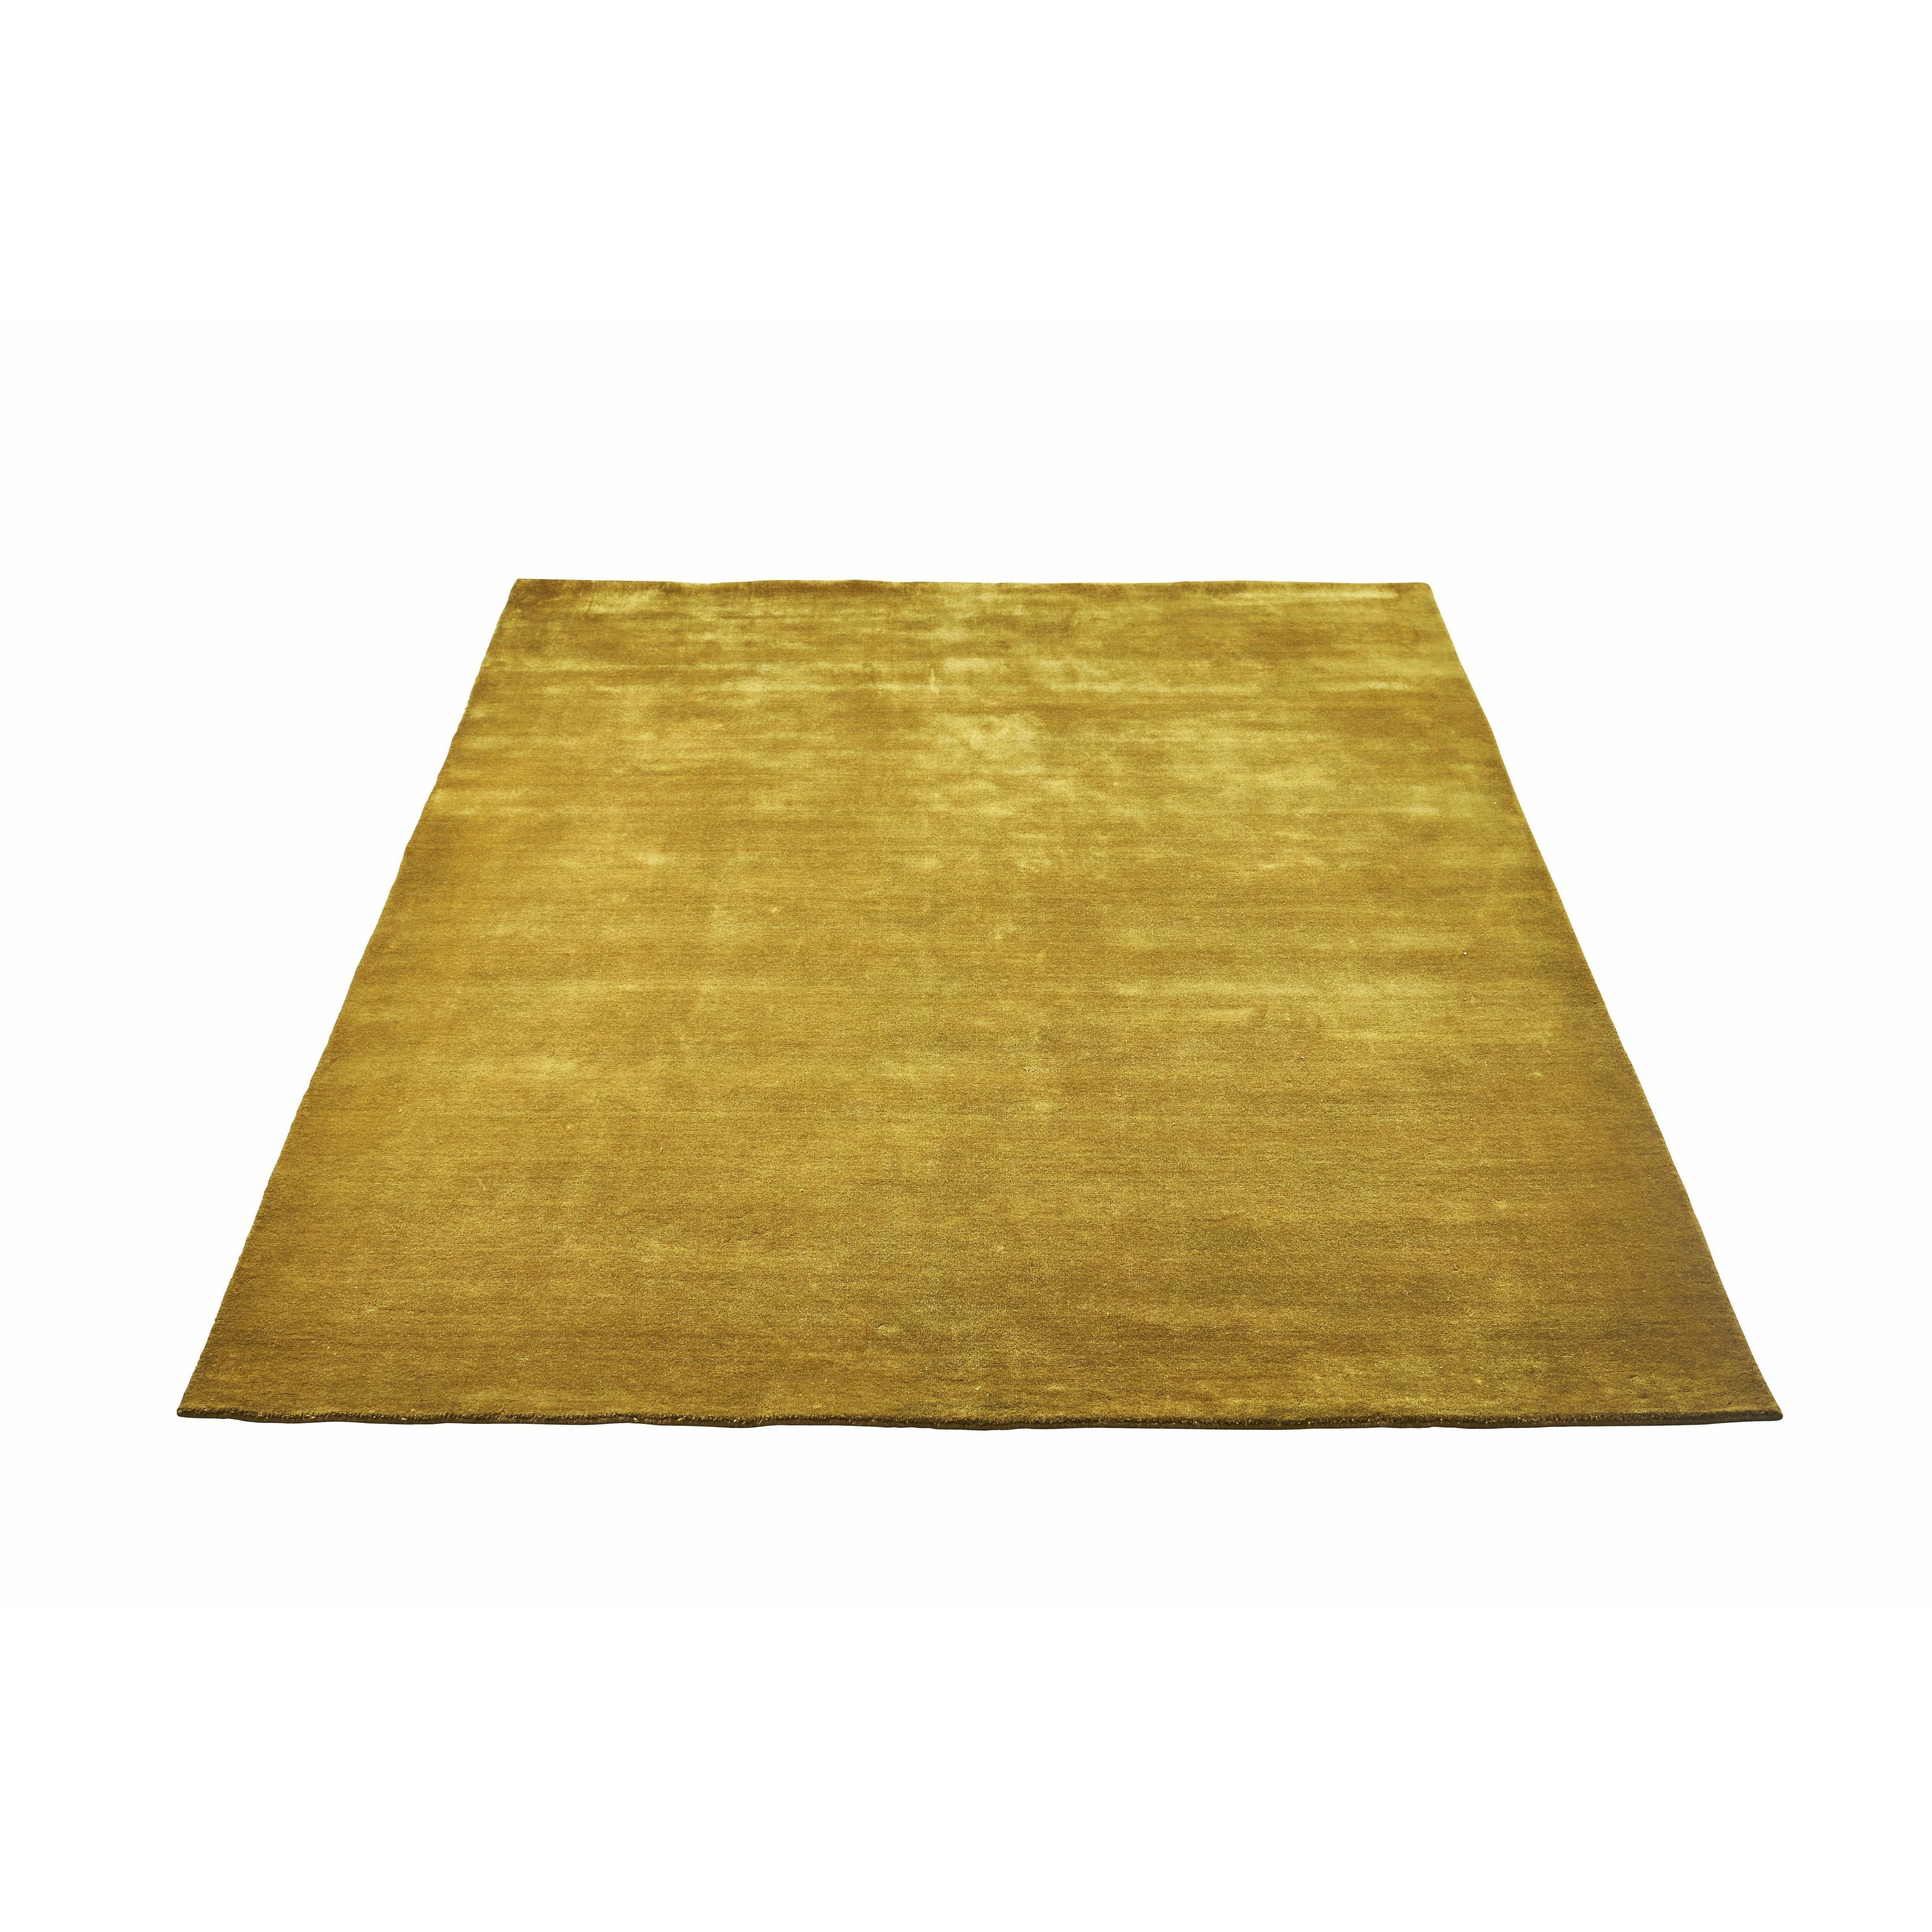 Massimo Erde Bambusteppich Chinesisch Gelb, 170x240 Cm